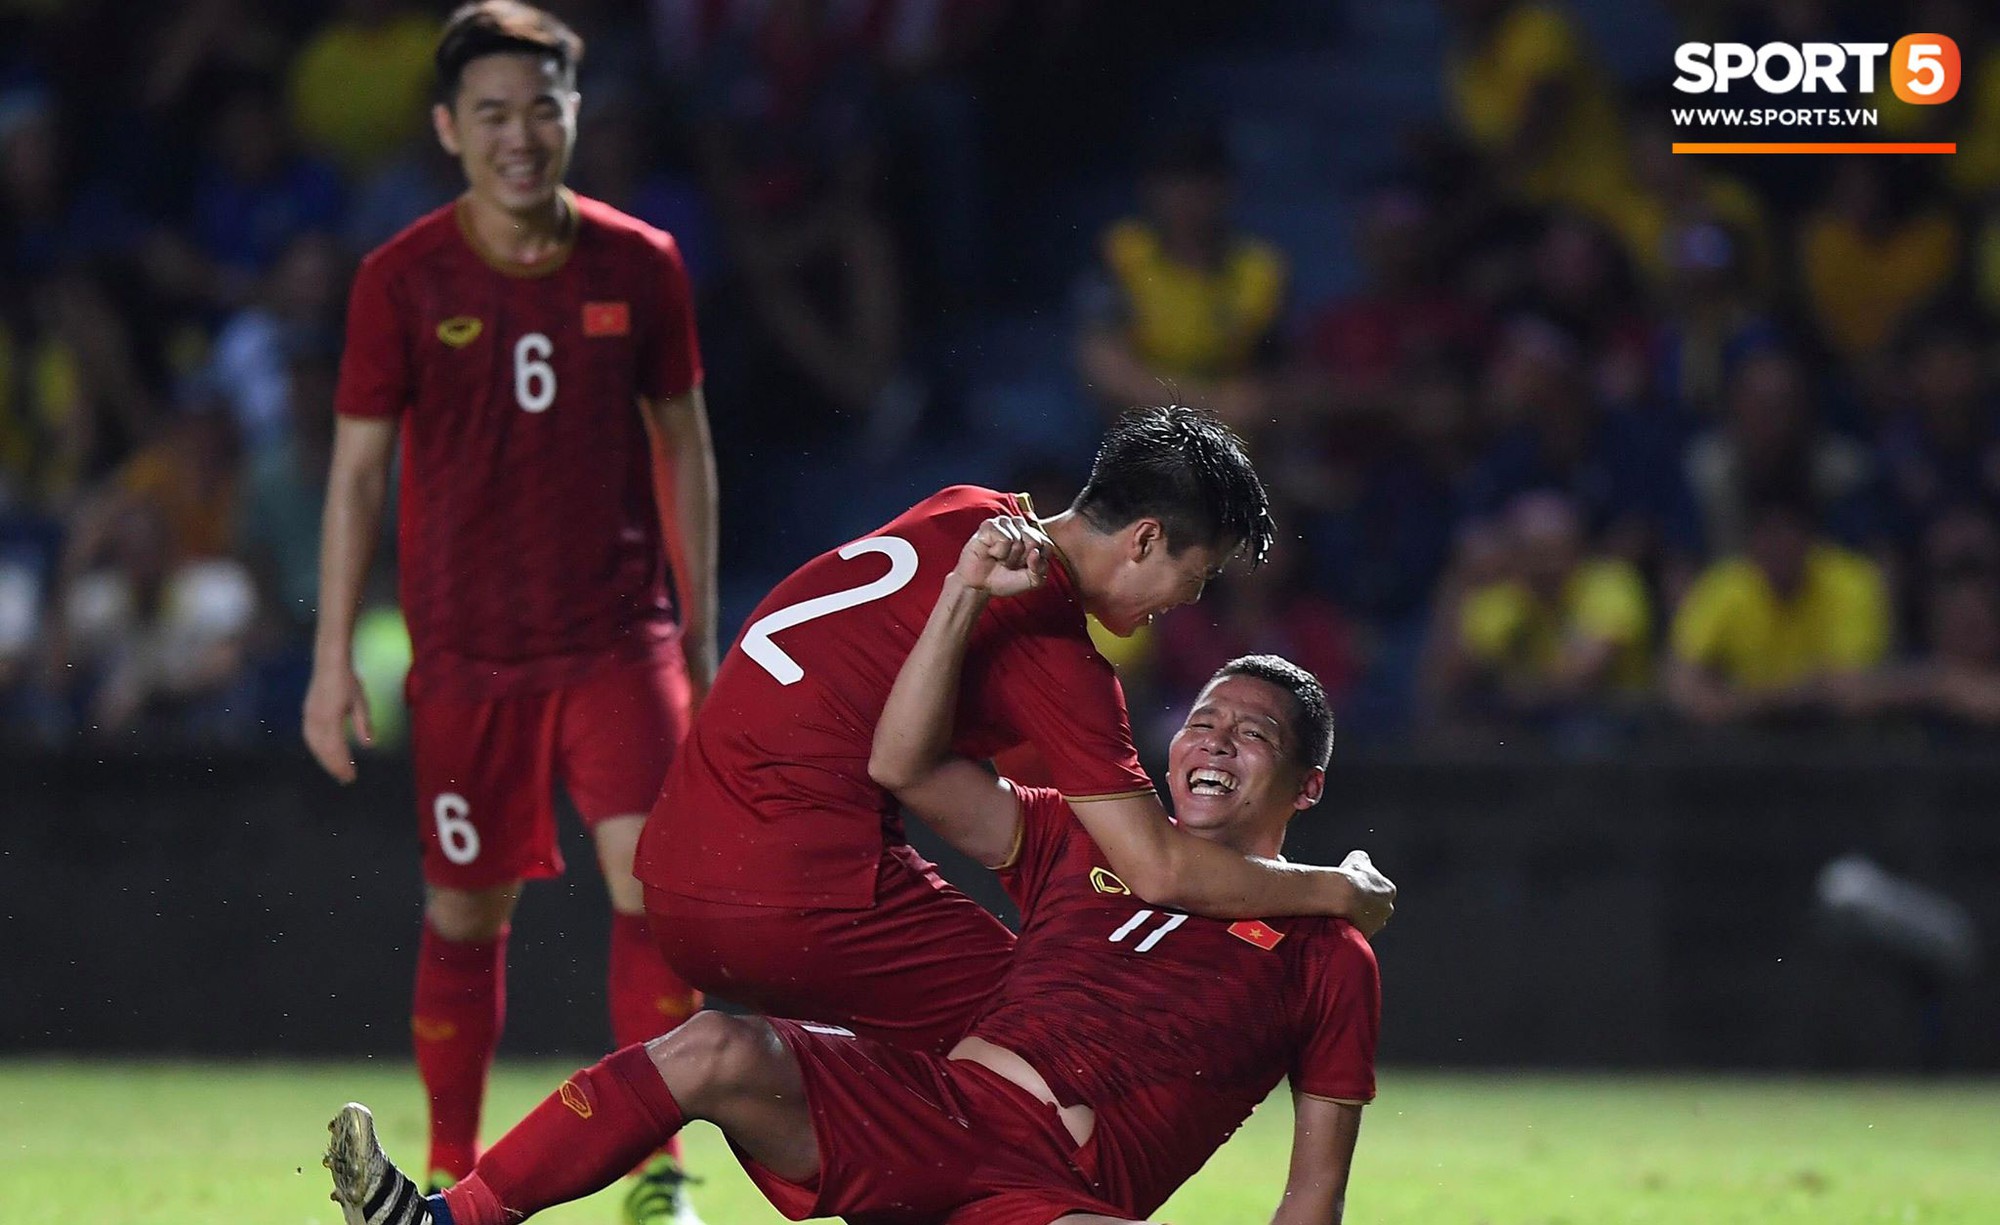 Anh Đức ghi bàn phút bù giờ, tuyển Việt Nam hạ Thái Lan để vào chung kết King's Cup  - Ảnh 1.